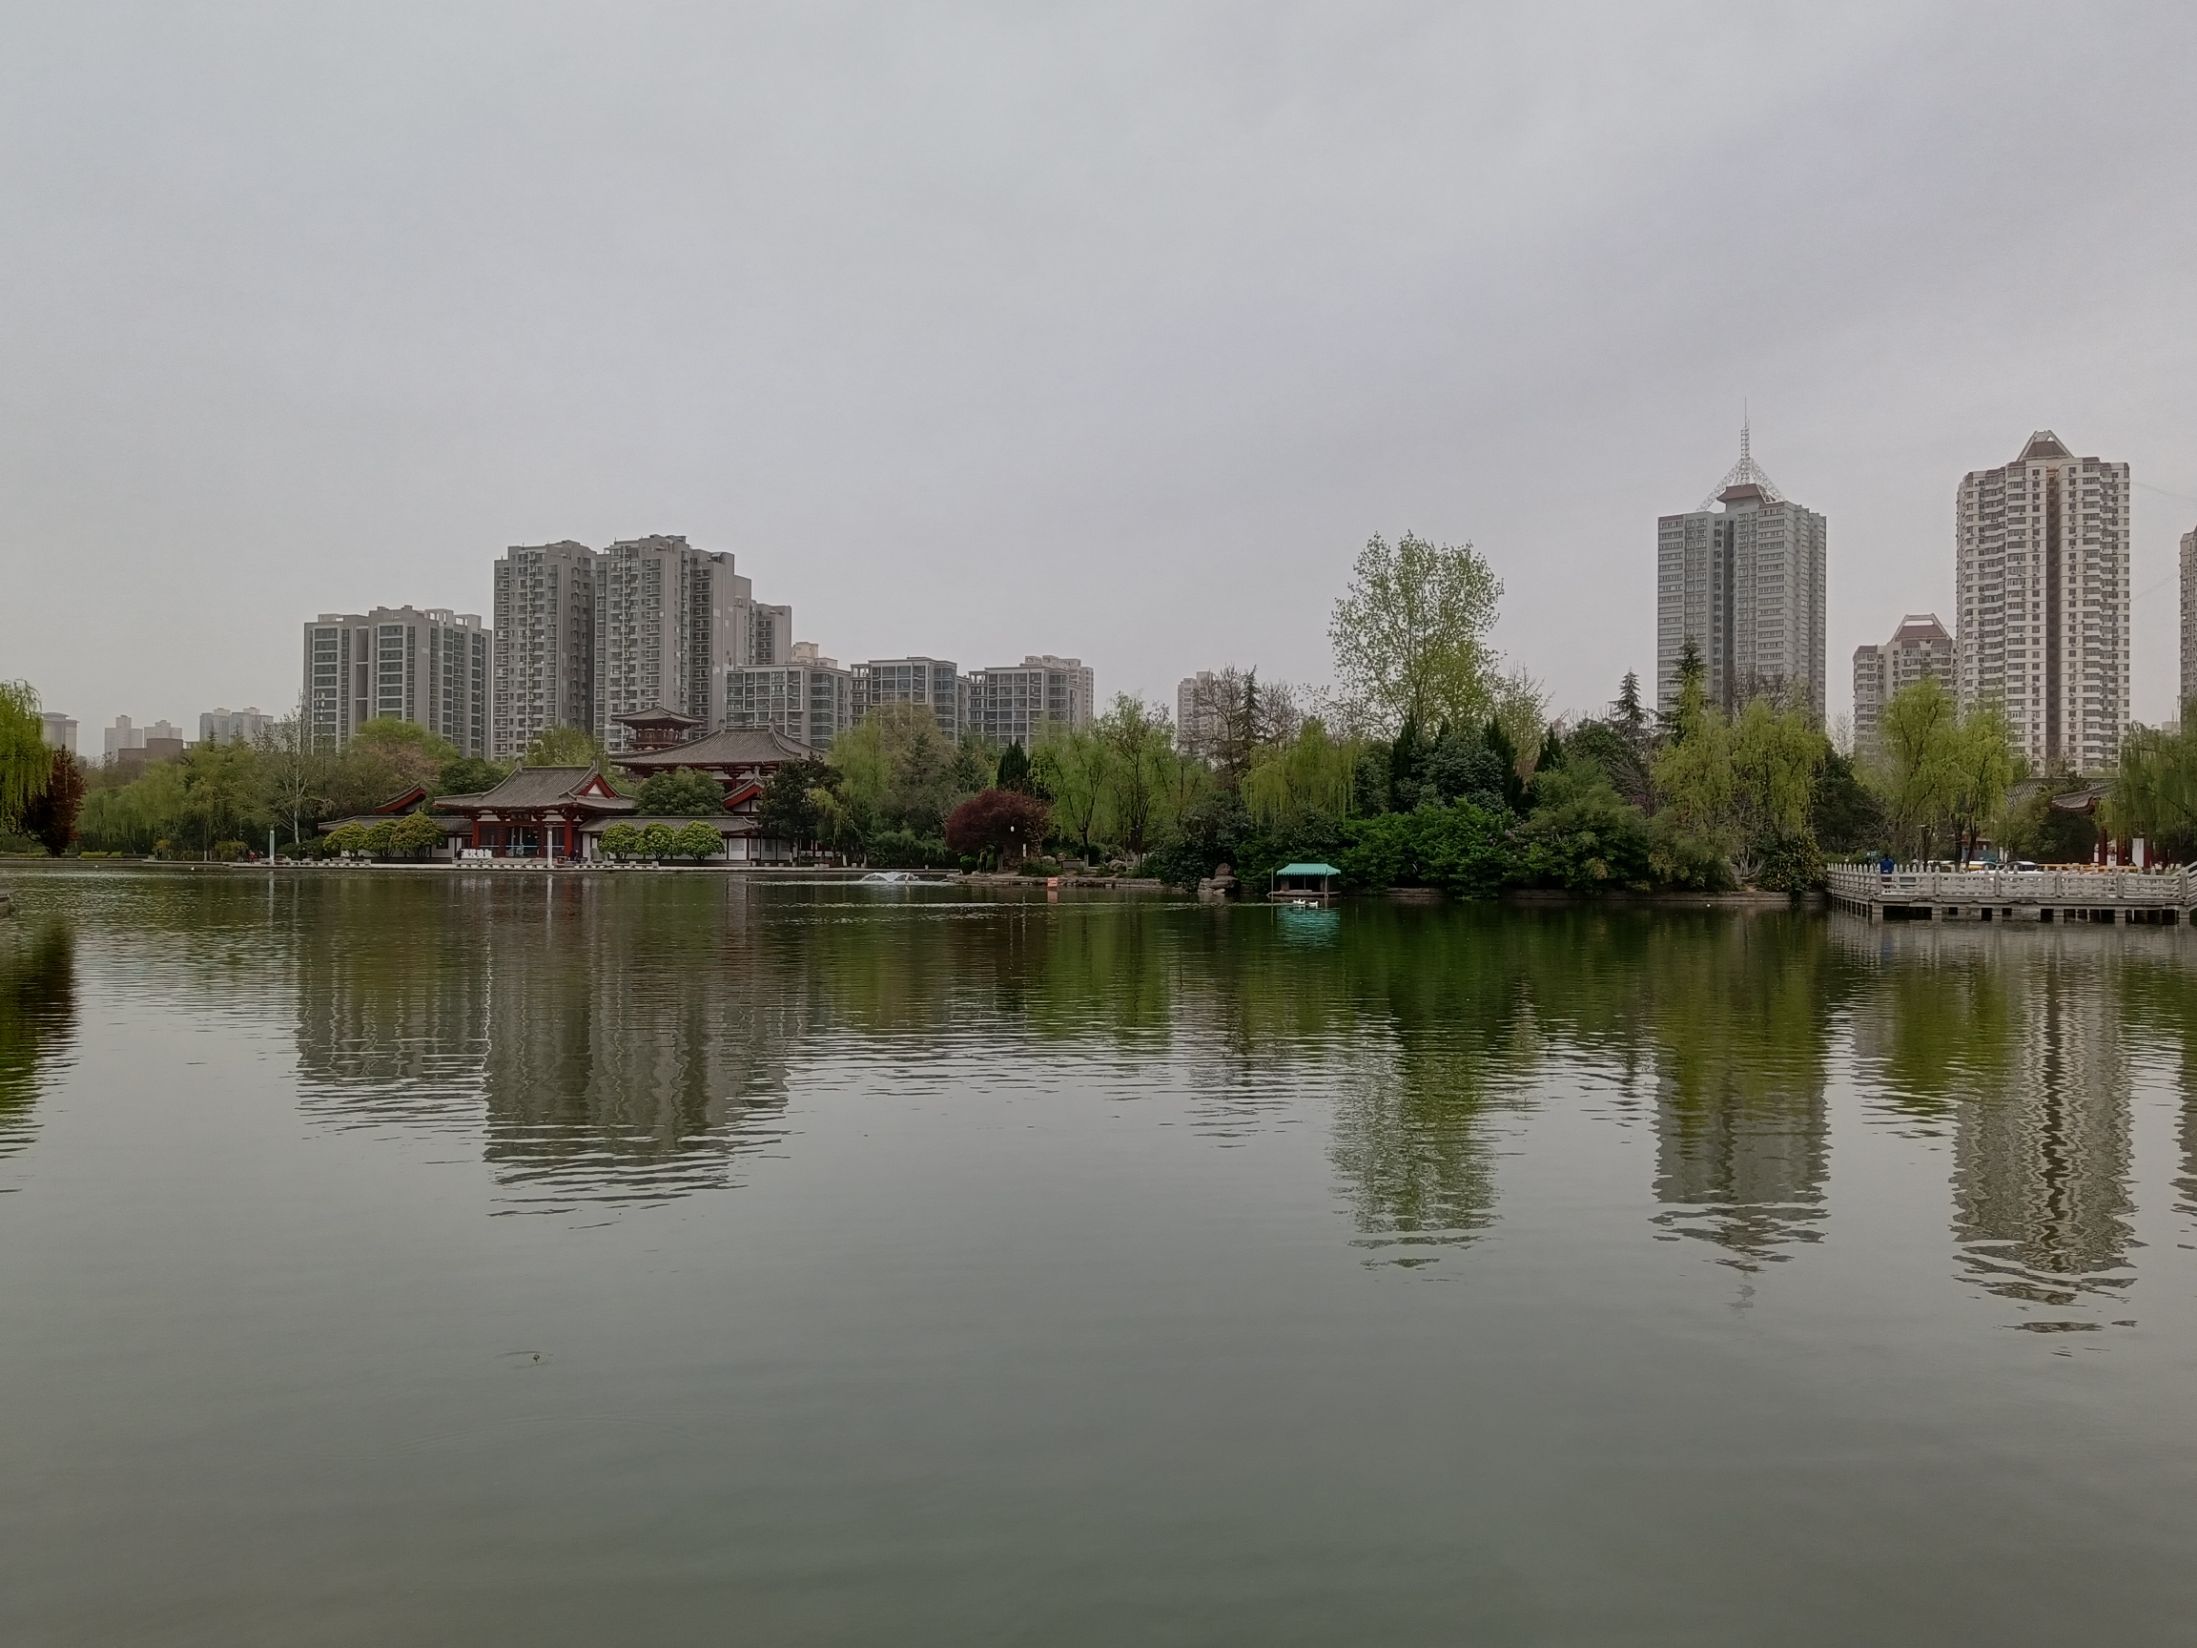 【携程攻略】西安丰庆公园景点,丰庆公园公园四周围都是高楼，只有这里种满树木，绿树成荫，宽阔的湖…